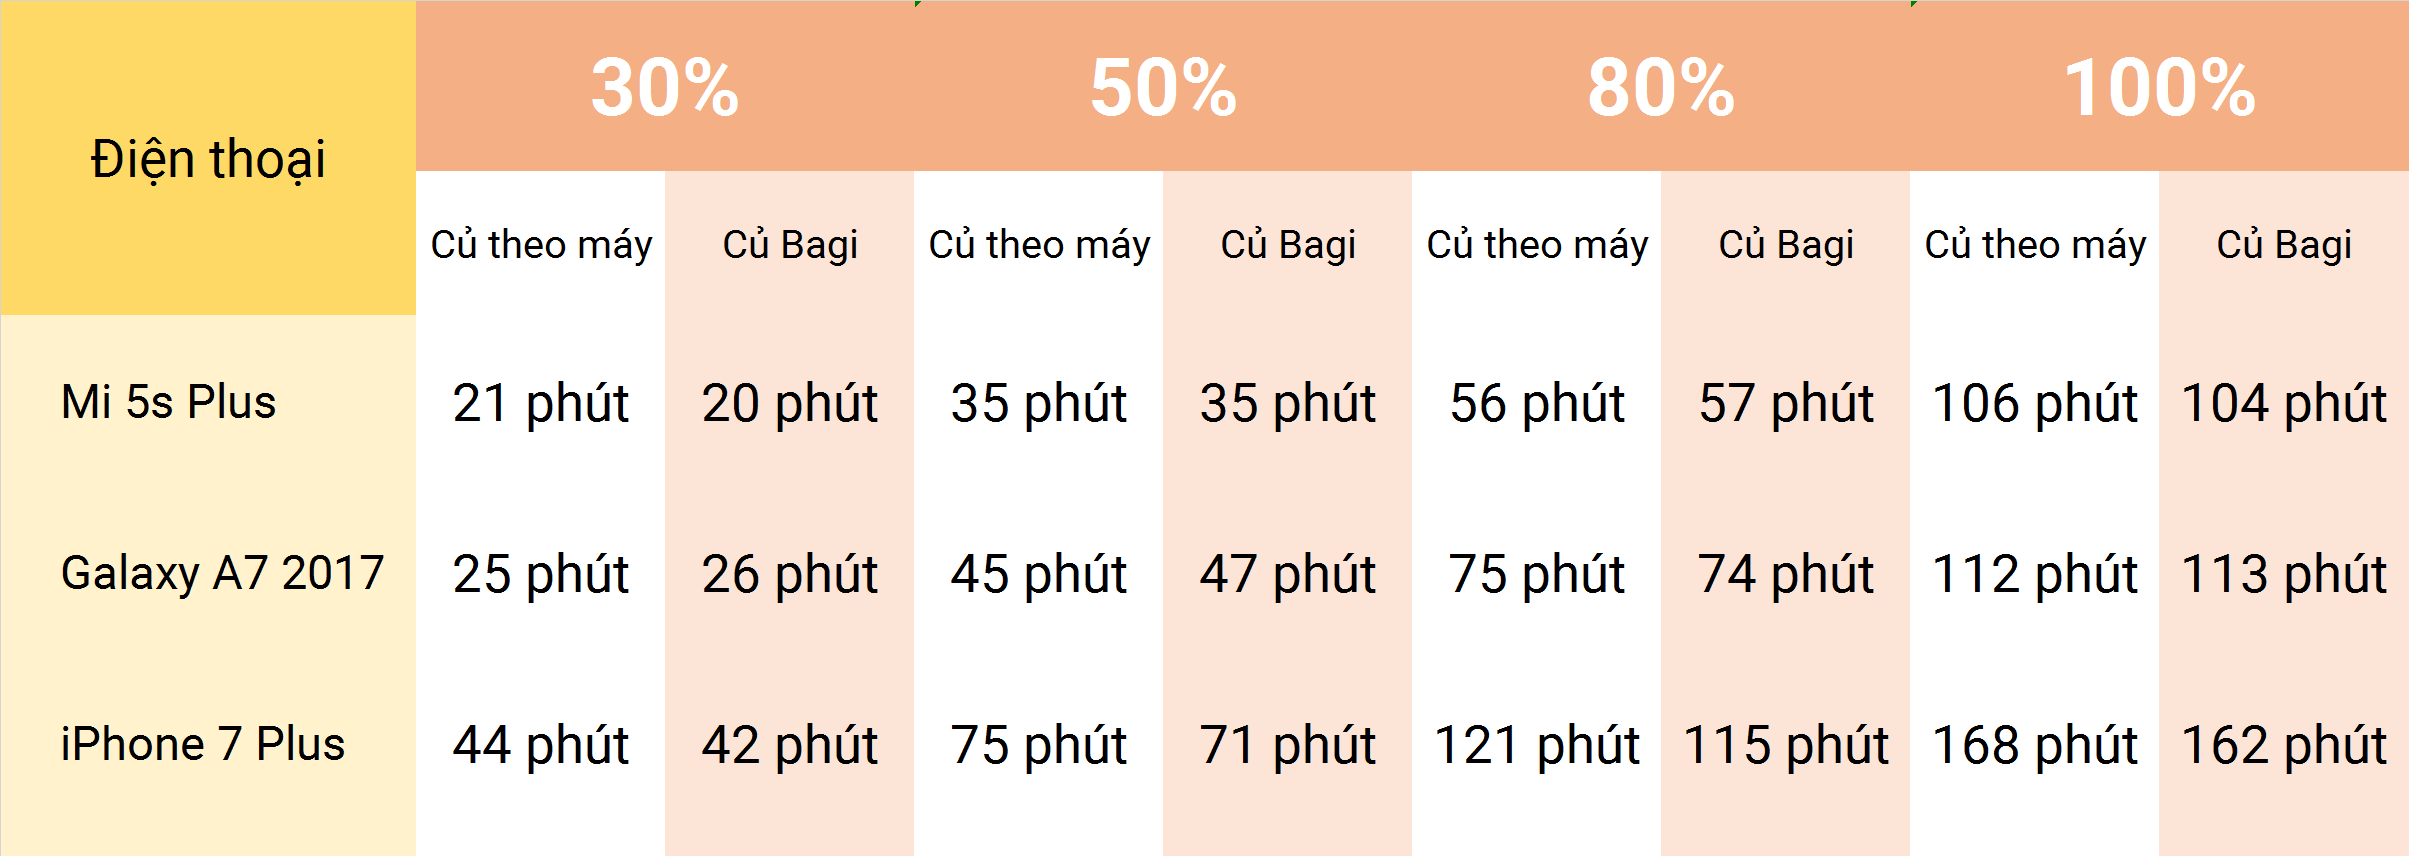 Đánh giá củ sạc Bagi M30 made in Vietnam: Quick Charge 3.0, giá 300.000 đồng - 10